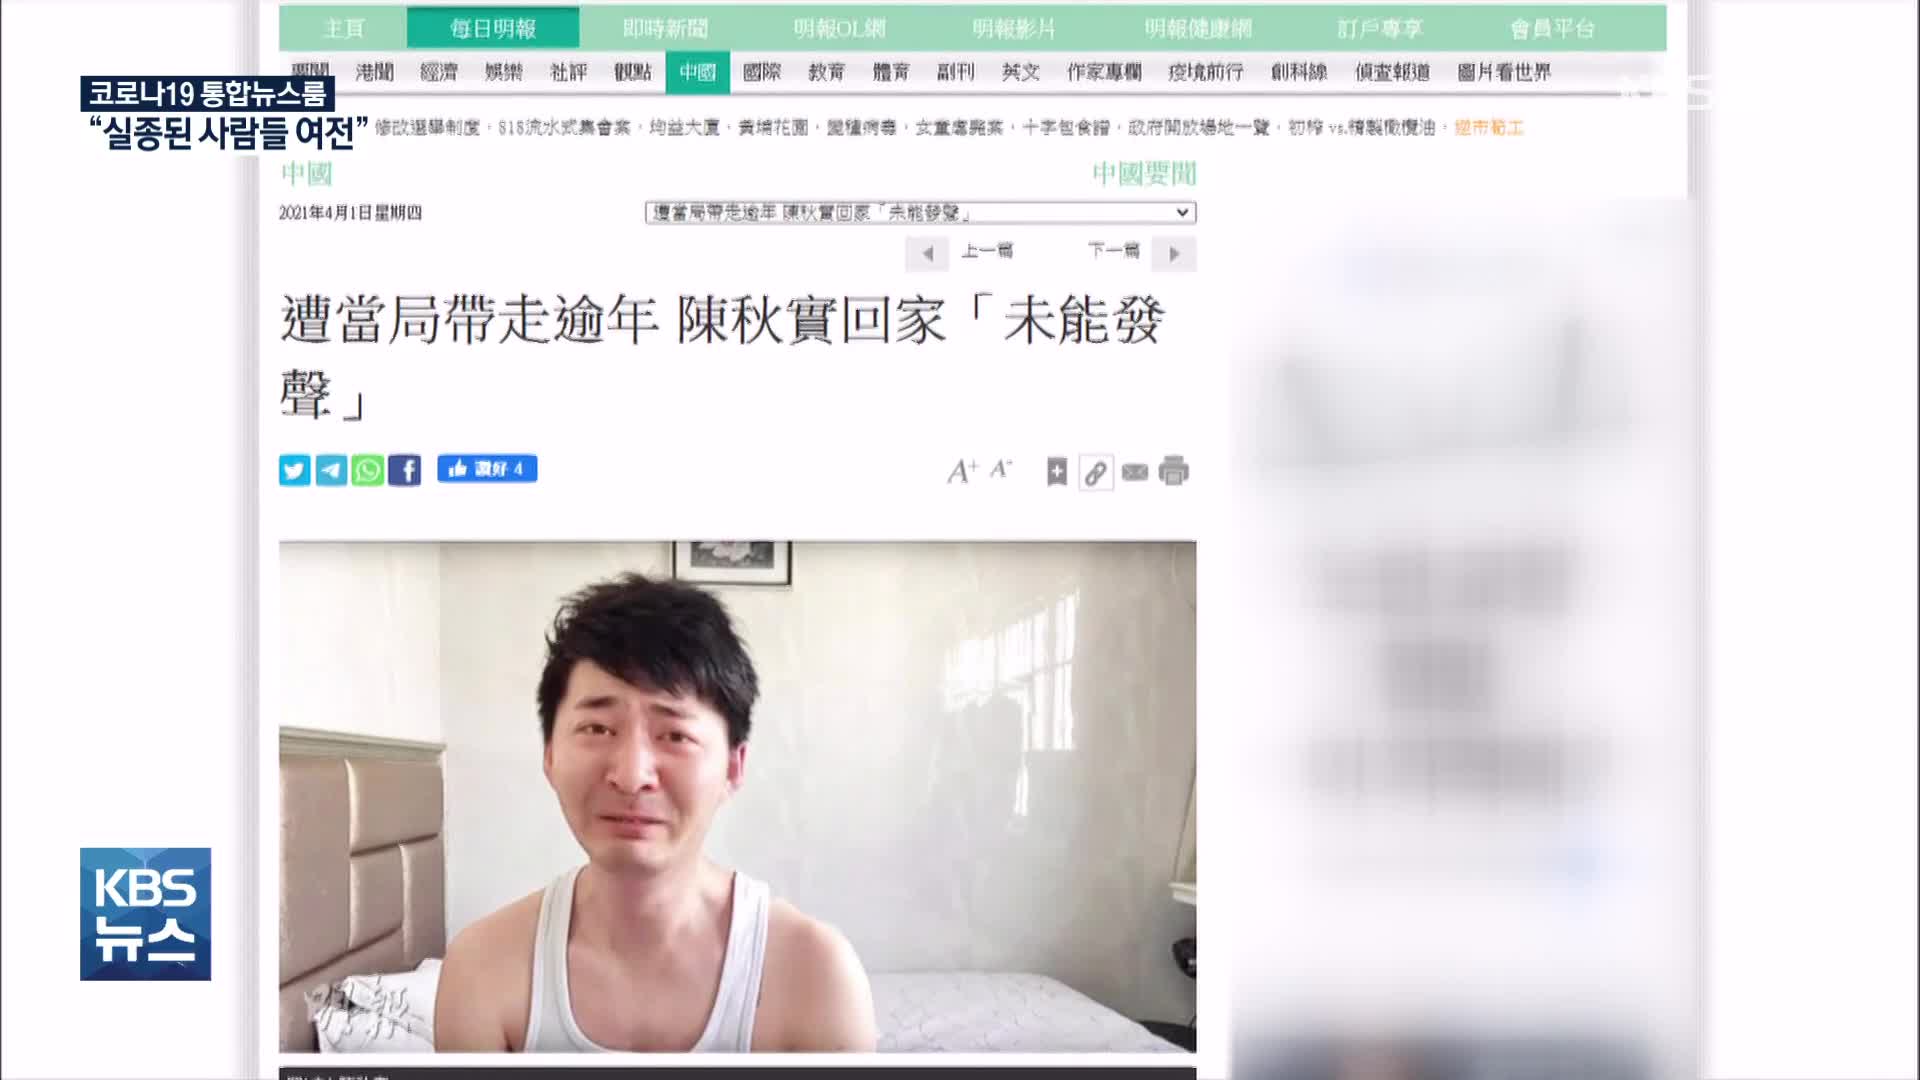 목숨걸고 ‘우한 실태’ 고발한 중국 시민기자, 1년 만에 석방